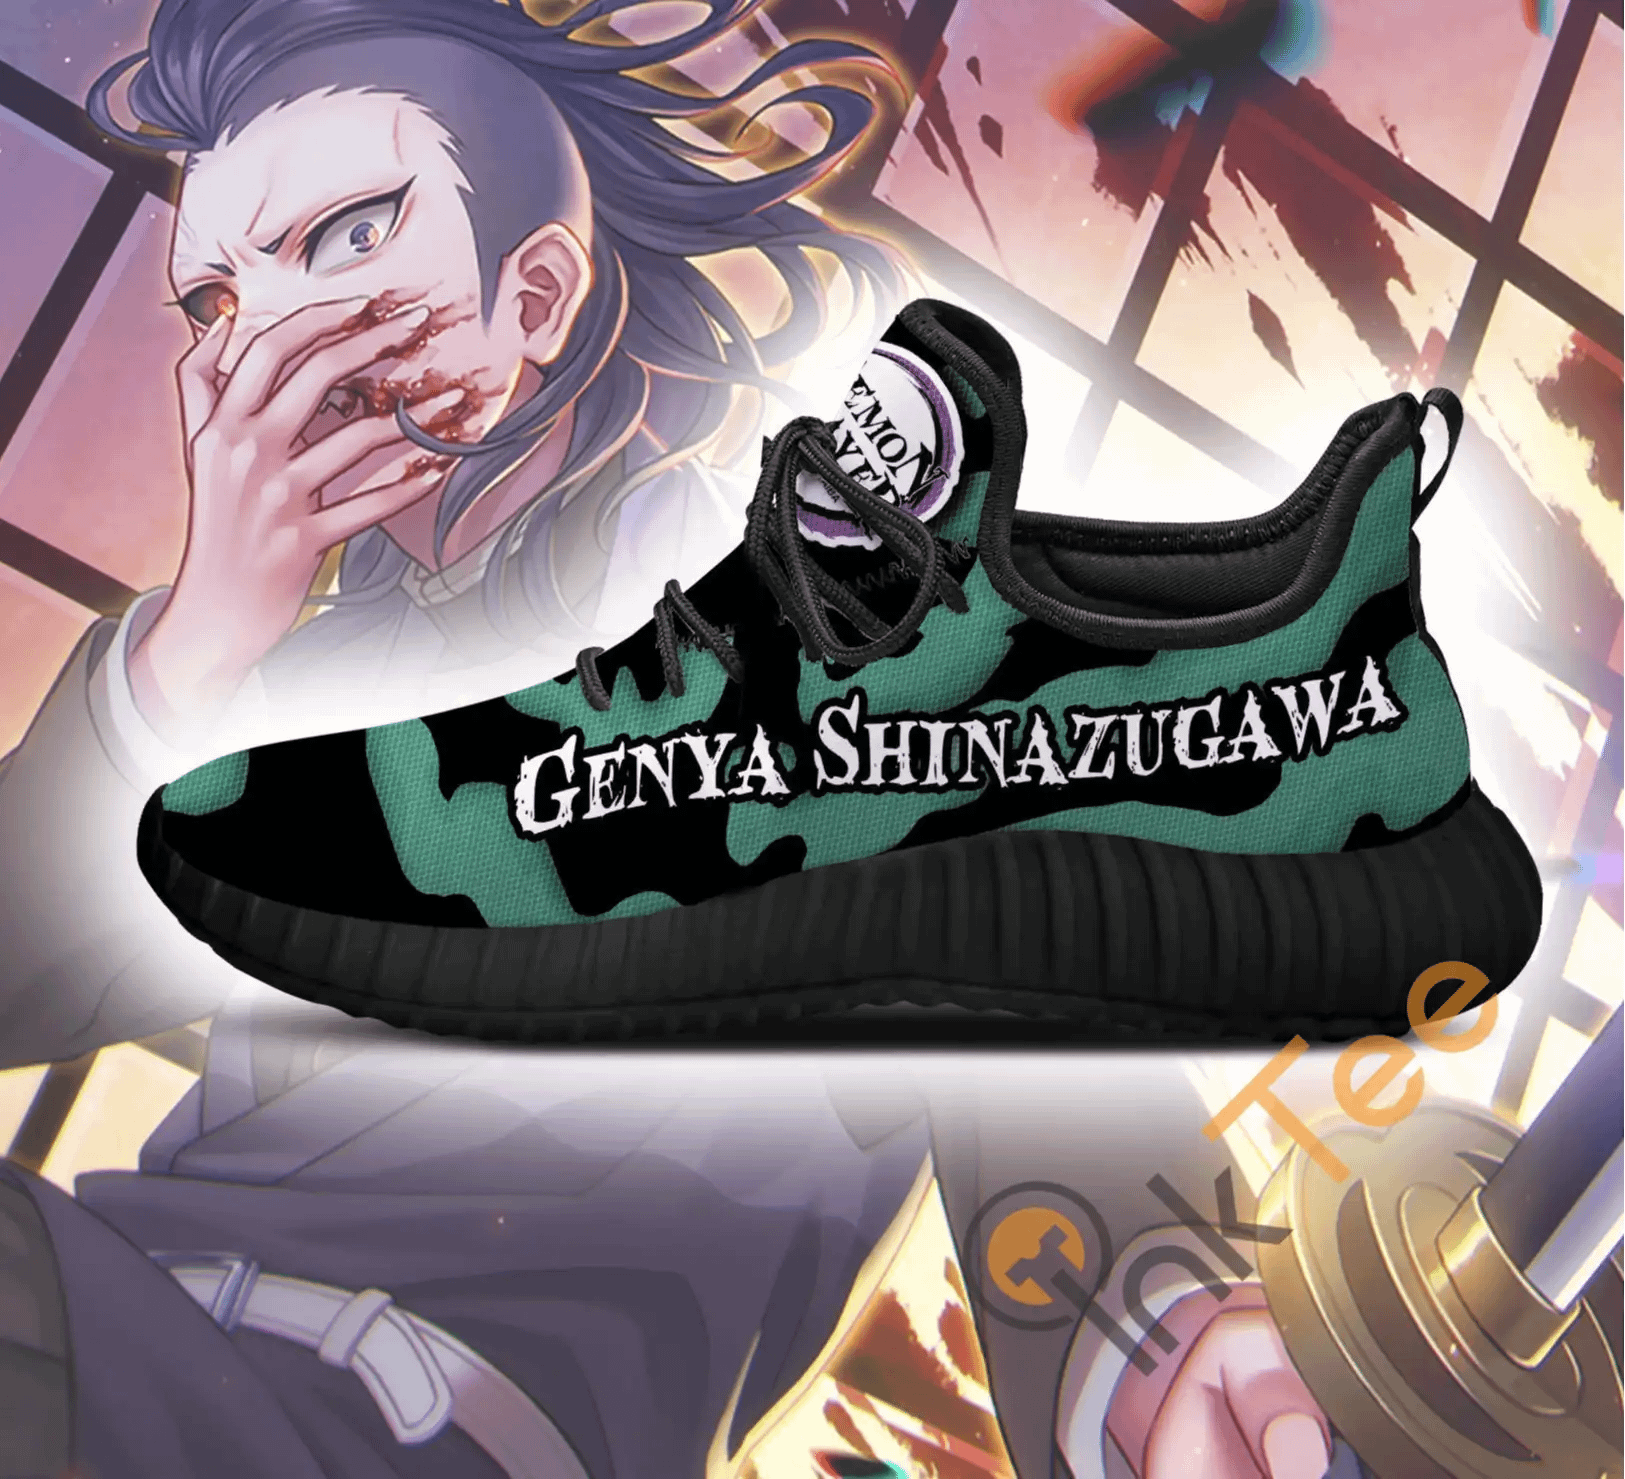 Inktee Store - Demon Slayer Genya Shinazugawa Custom Anime Amazon Reze Shoes Image